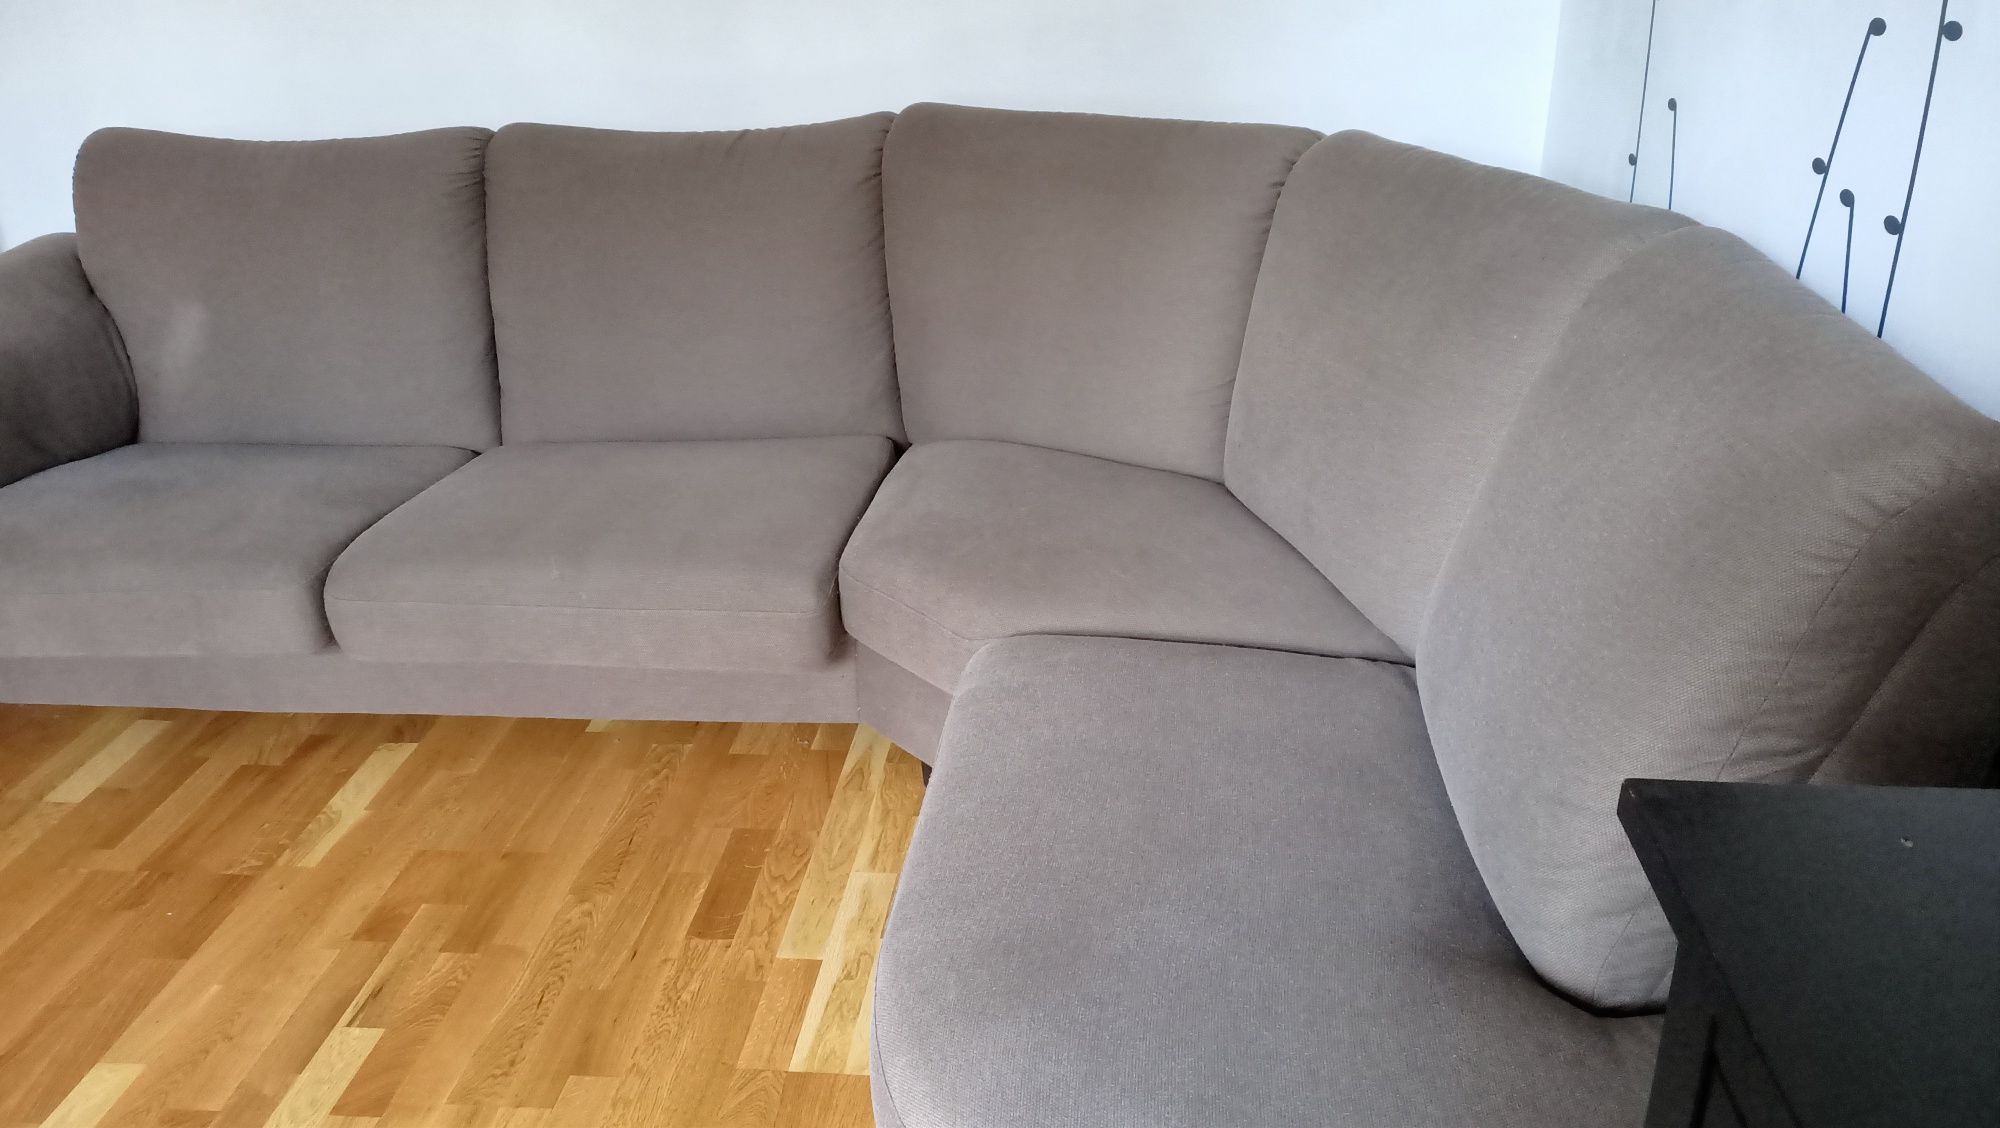 Duża kanapa sofa Ikea narożnik ok 270x210cm